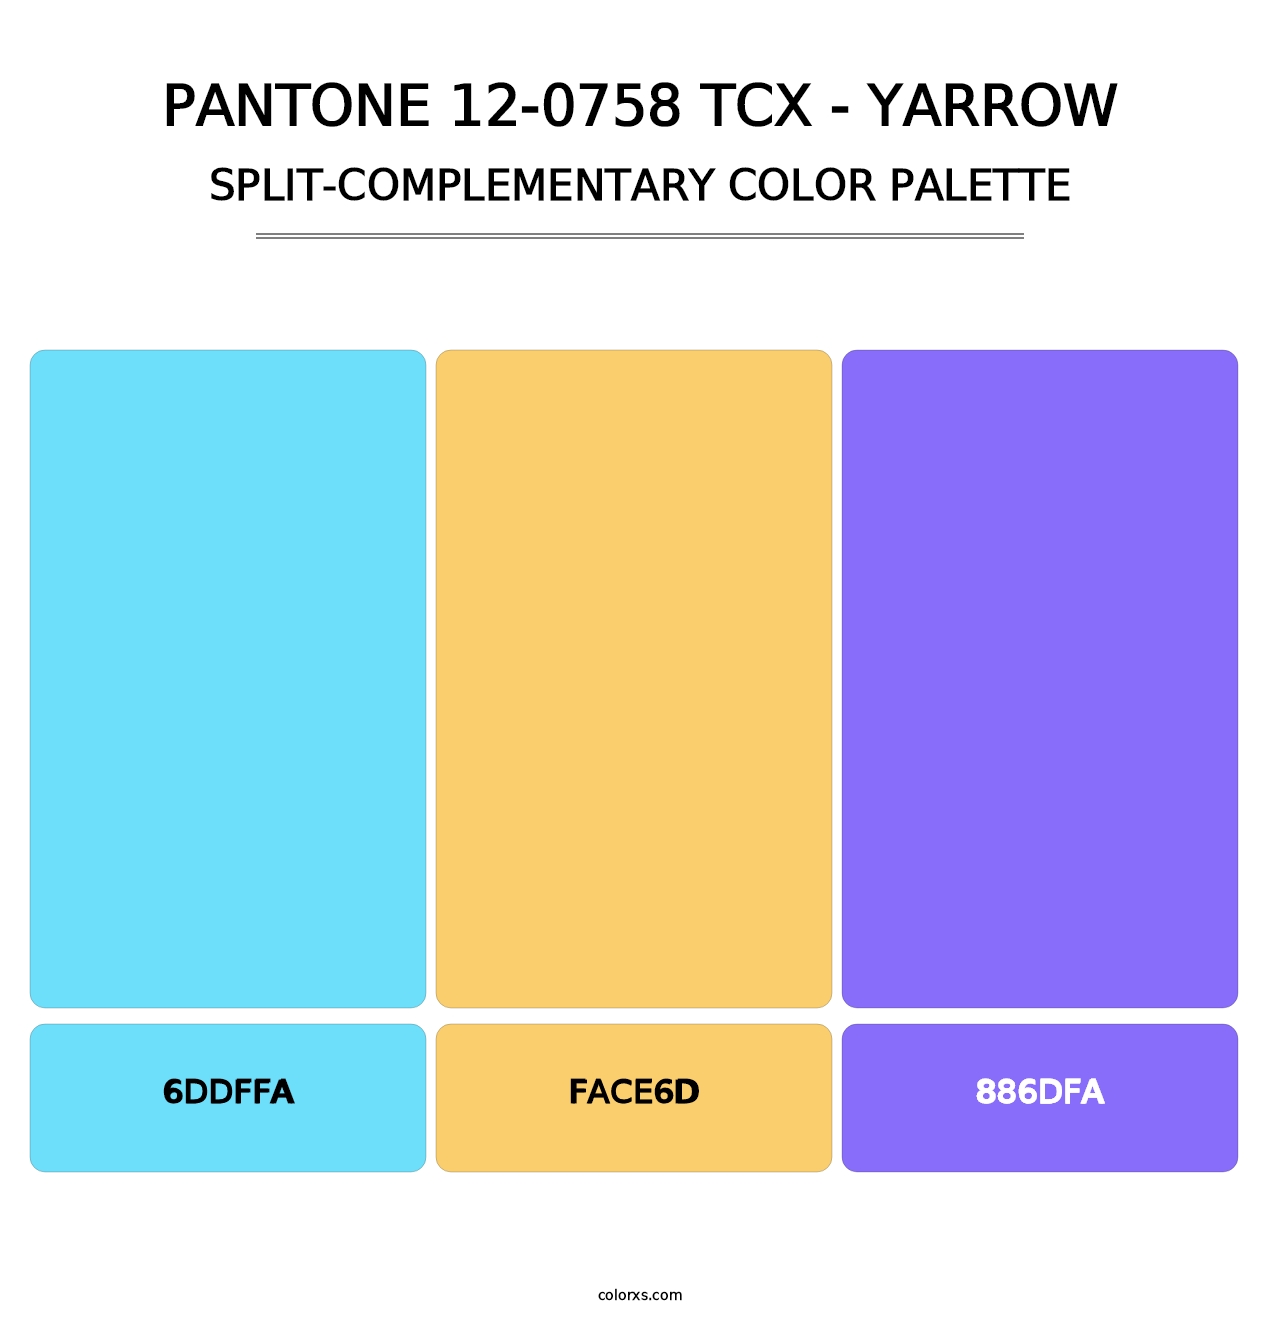 PANTONE 12-0758 TCX - Yarrow - Split-Complementary Color Palette